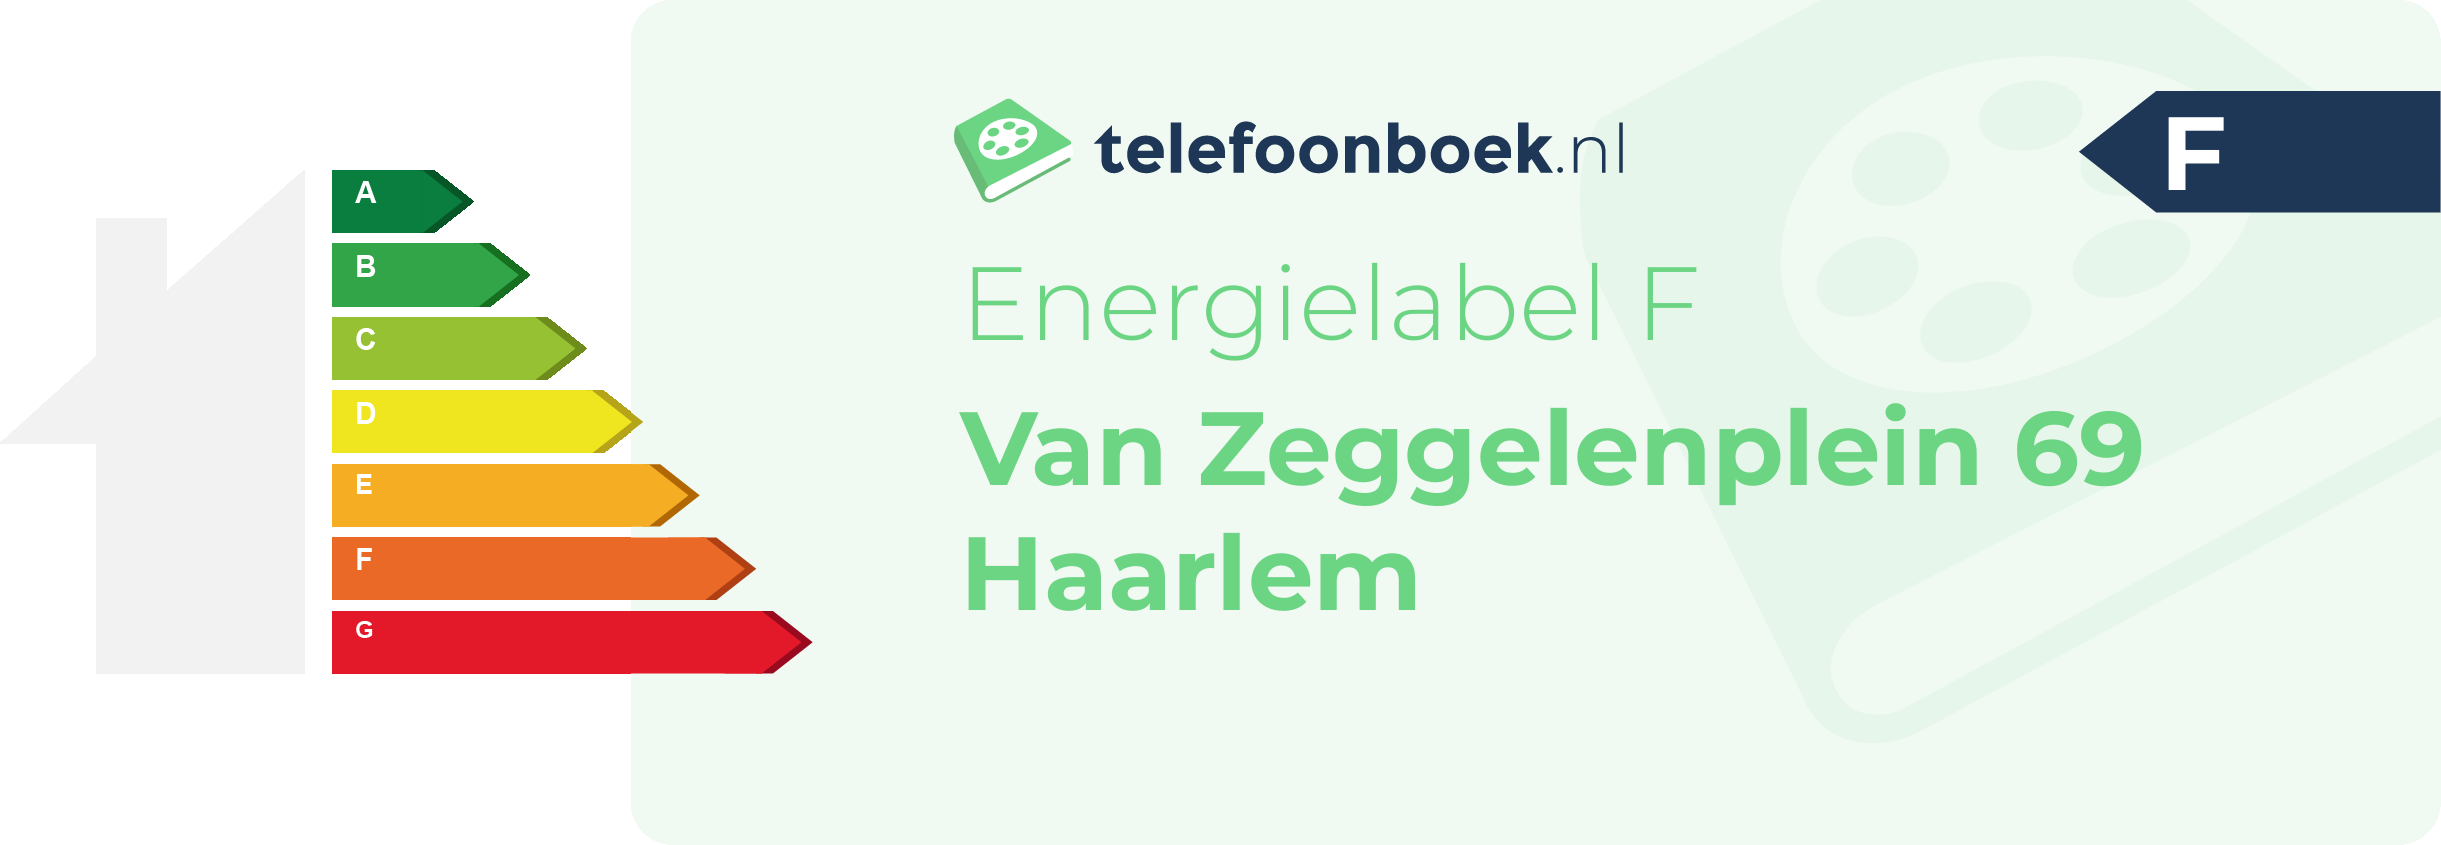 Energielabel Van Zeggelenplein 69 Haarlem